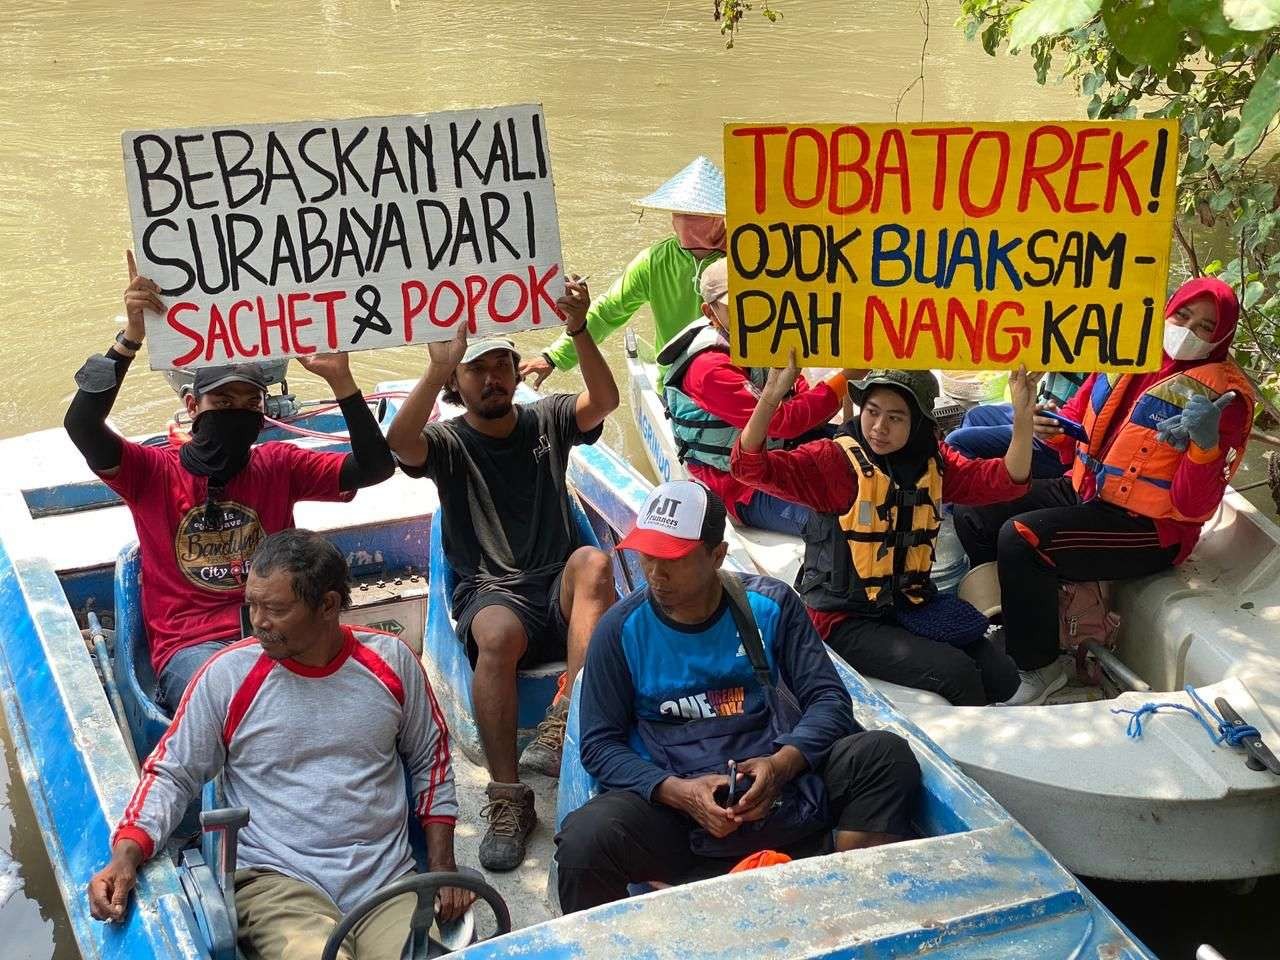 Kegiatan susur sungai yang dilakukan relawan Ecoton selama tiga hari di Kali Surabaya. (Foto: Ecoton)